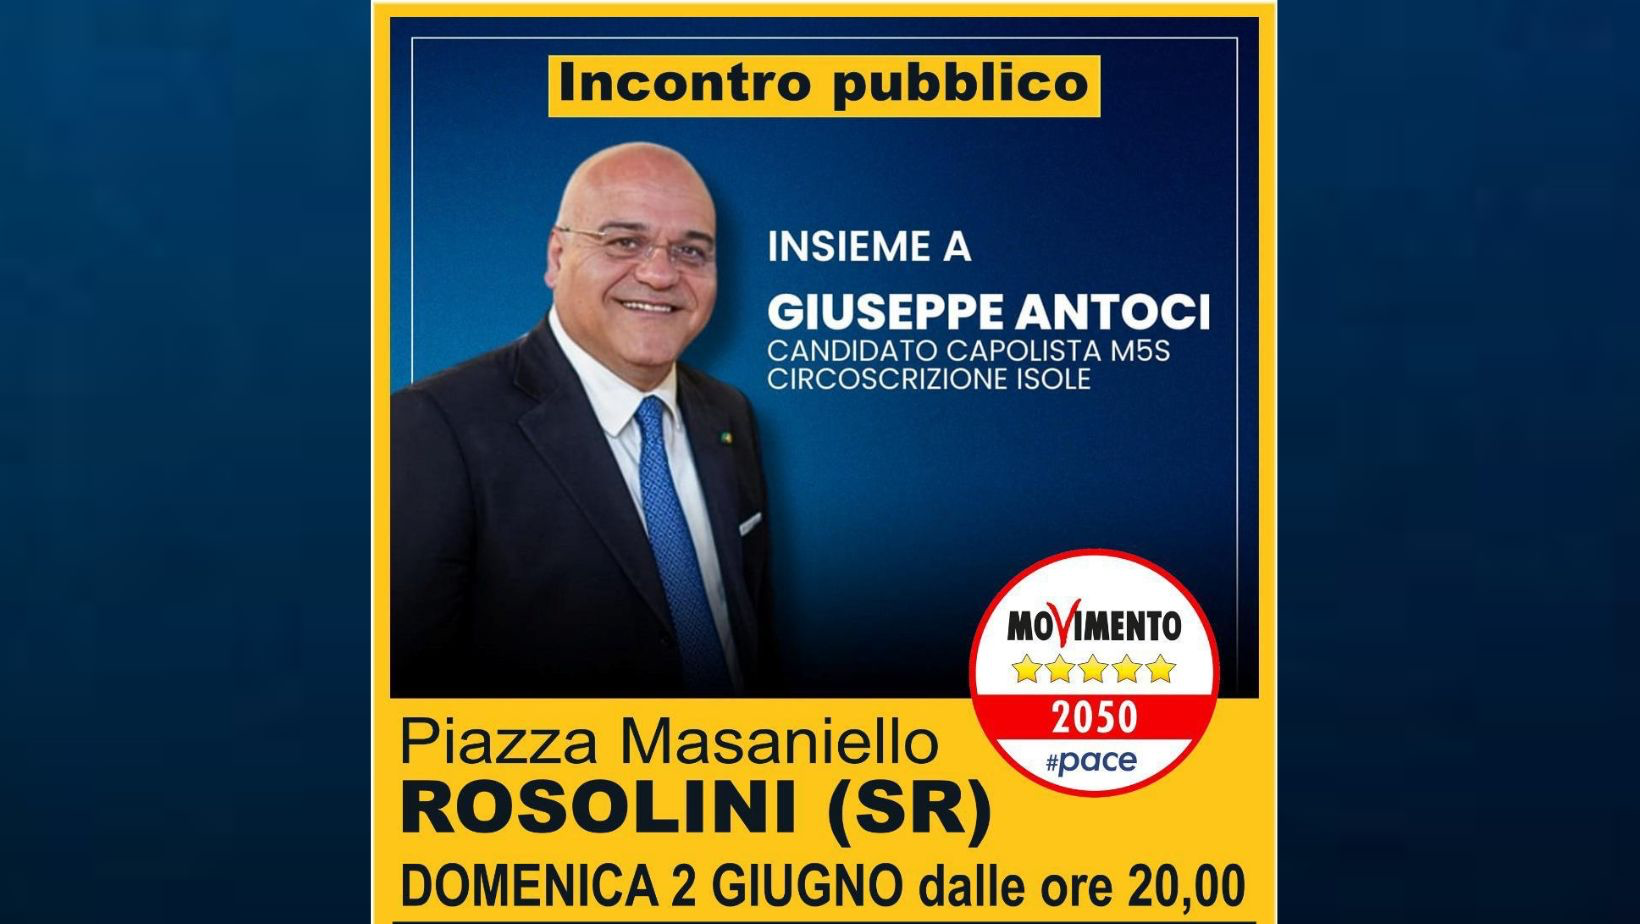 Domani sera in Piazza Masaniello l’incontro pubblico del M5S con Giuseppe Antoci